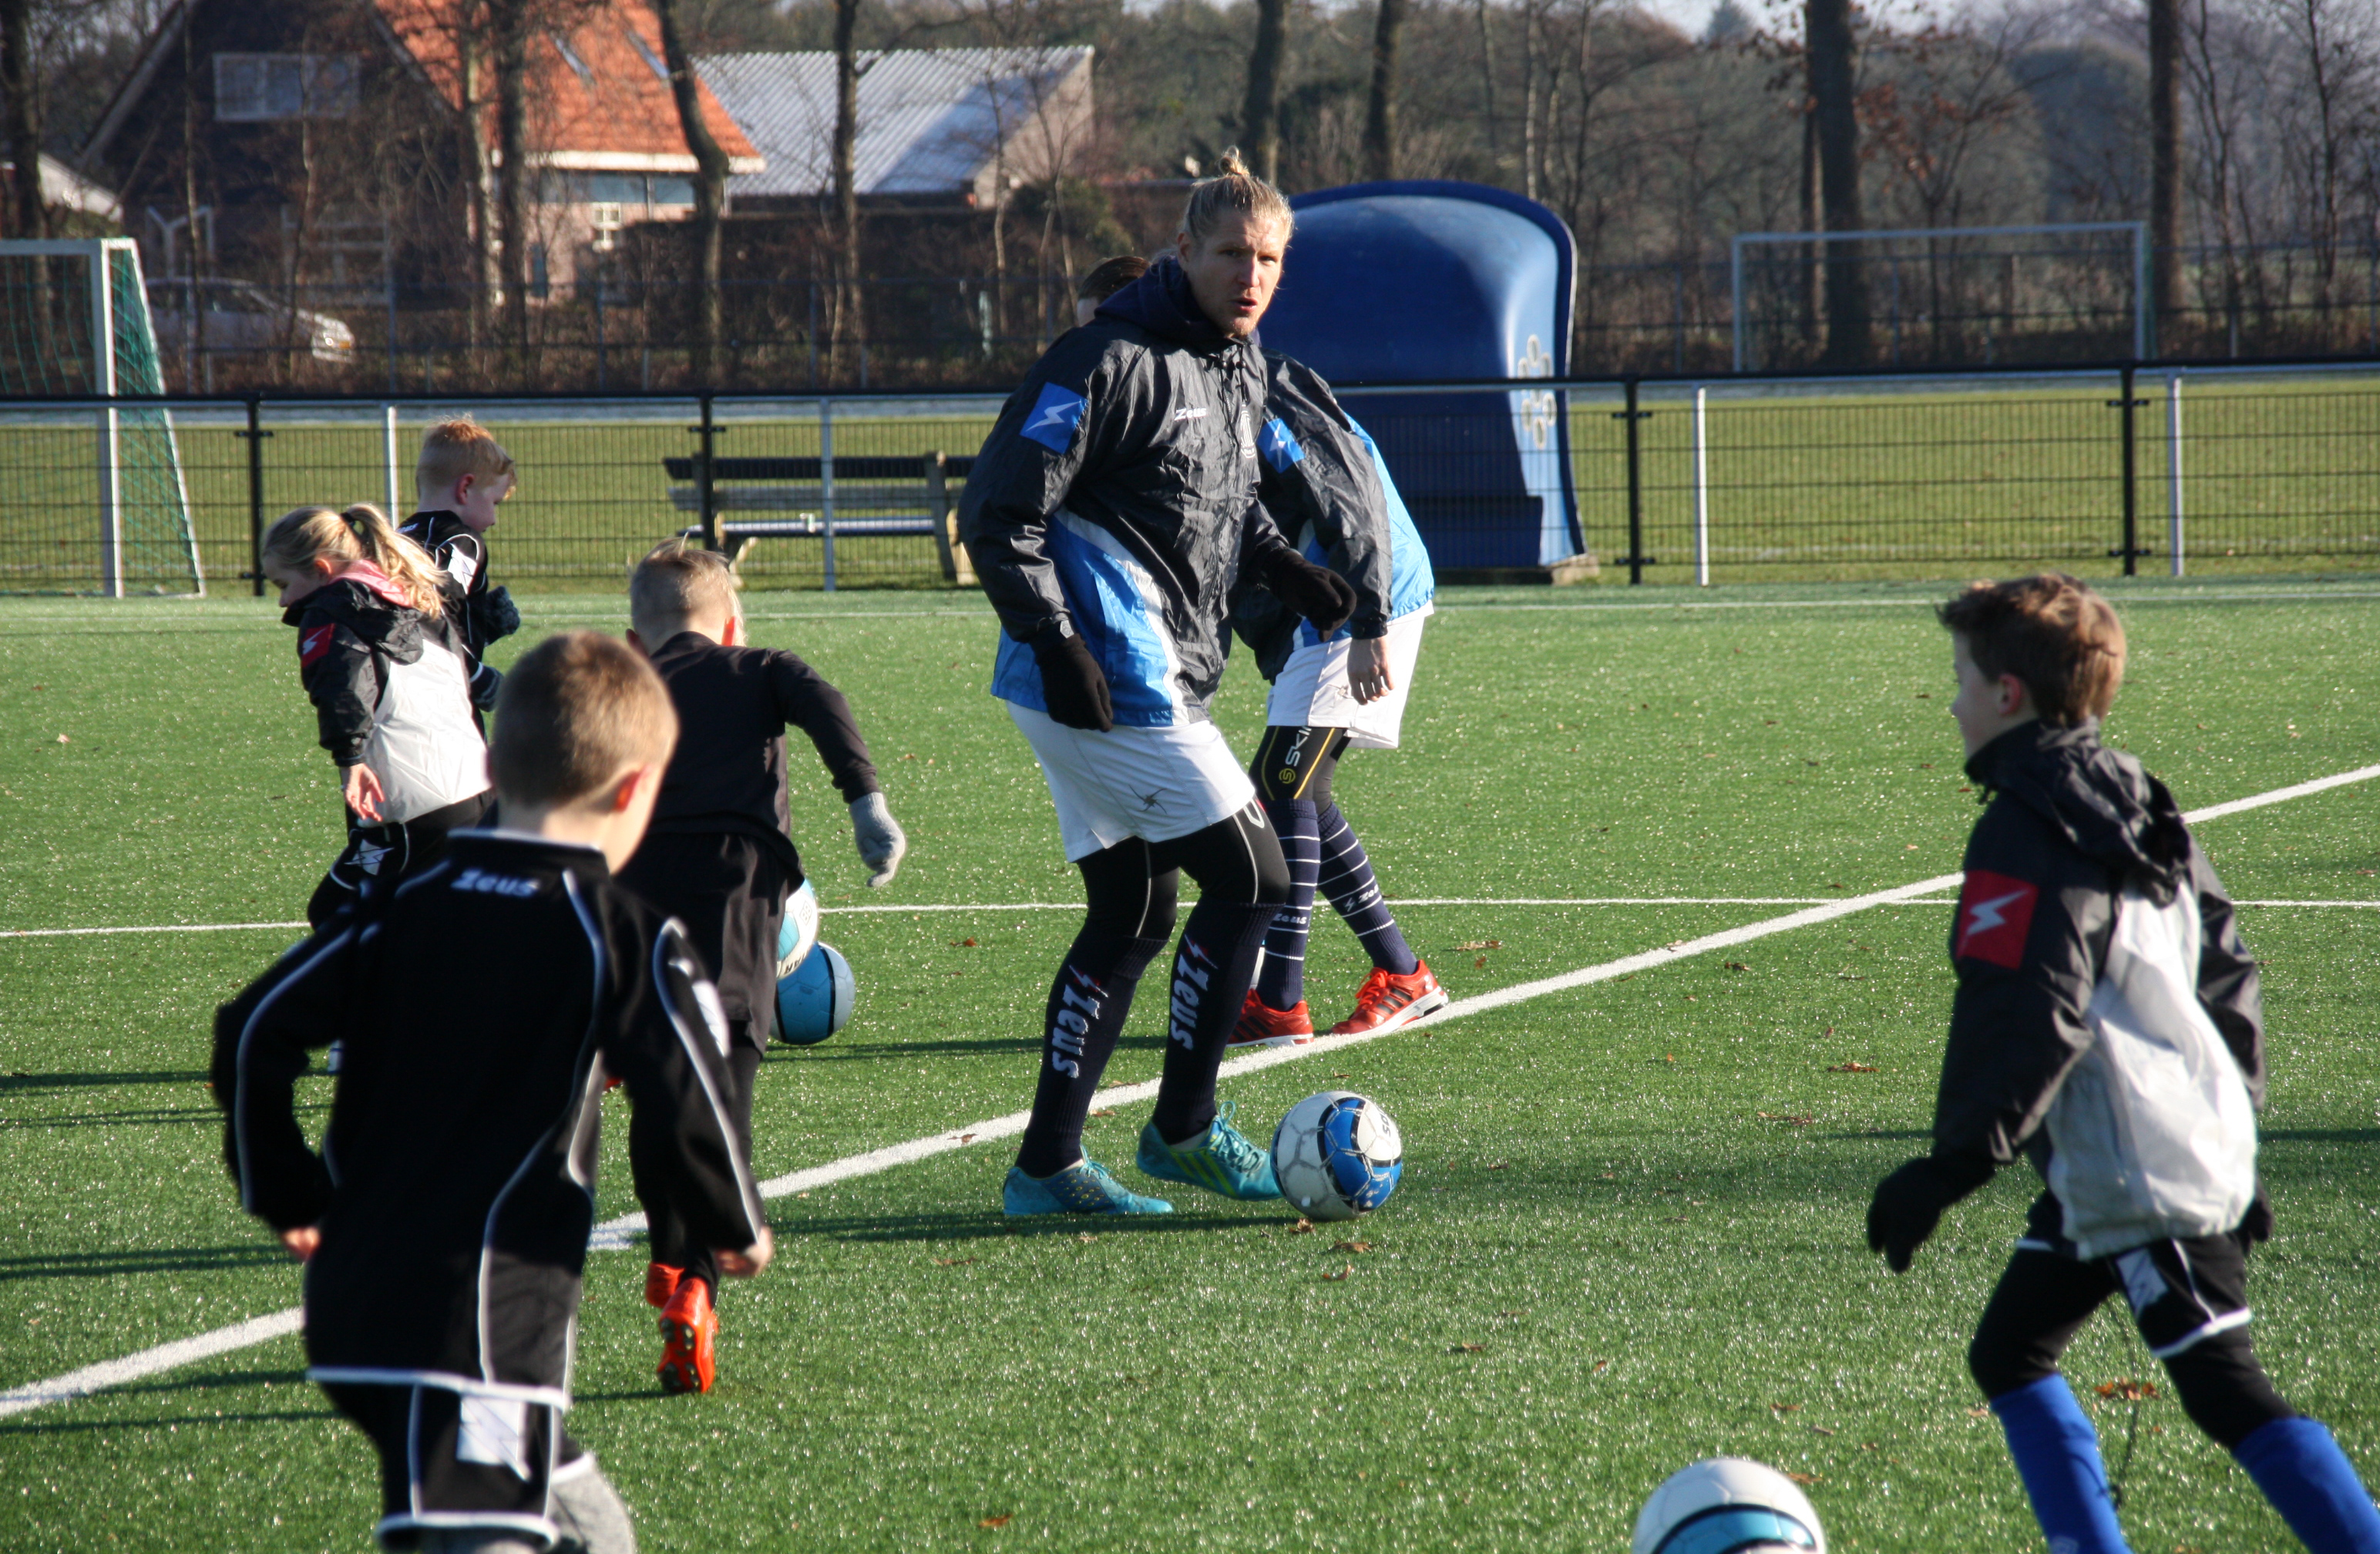 De casus Edwin van der Sar inspireerde een Finse voetballer zich te verdiepen in sportmanagement - Johan Cruyff Institute